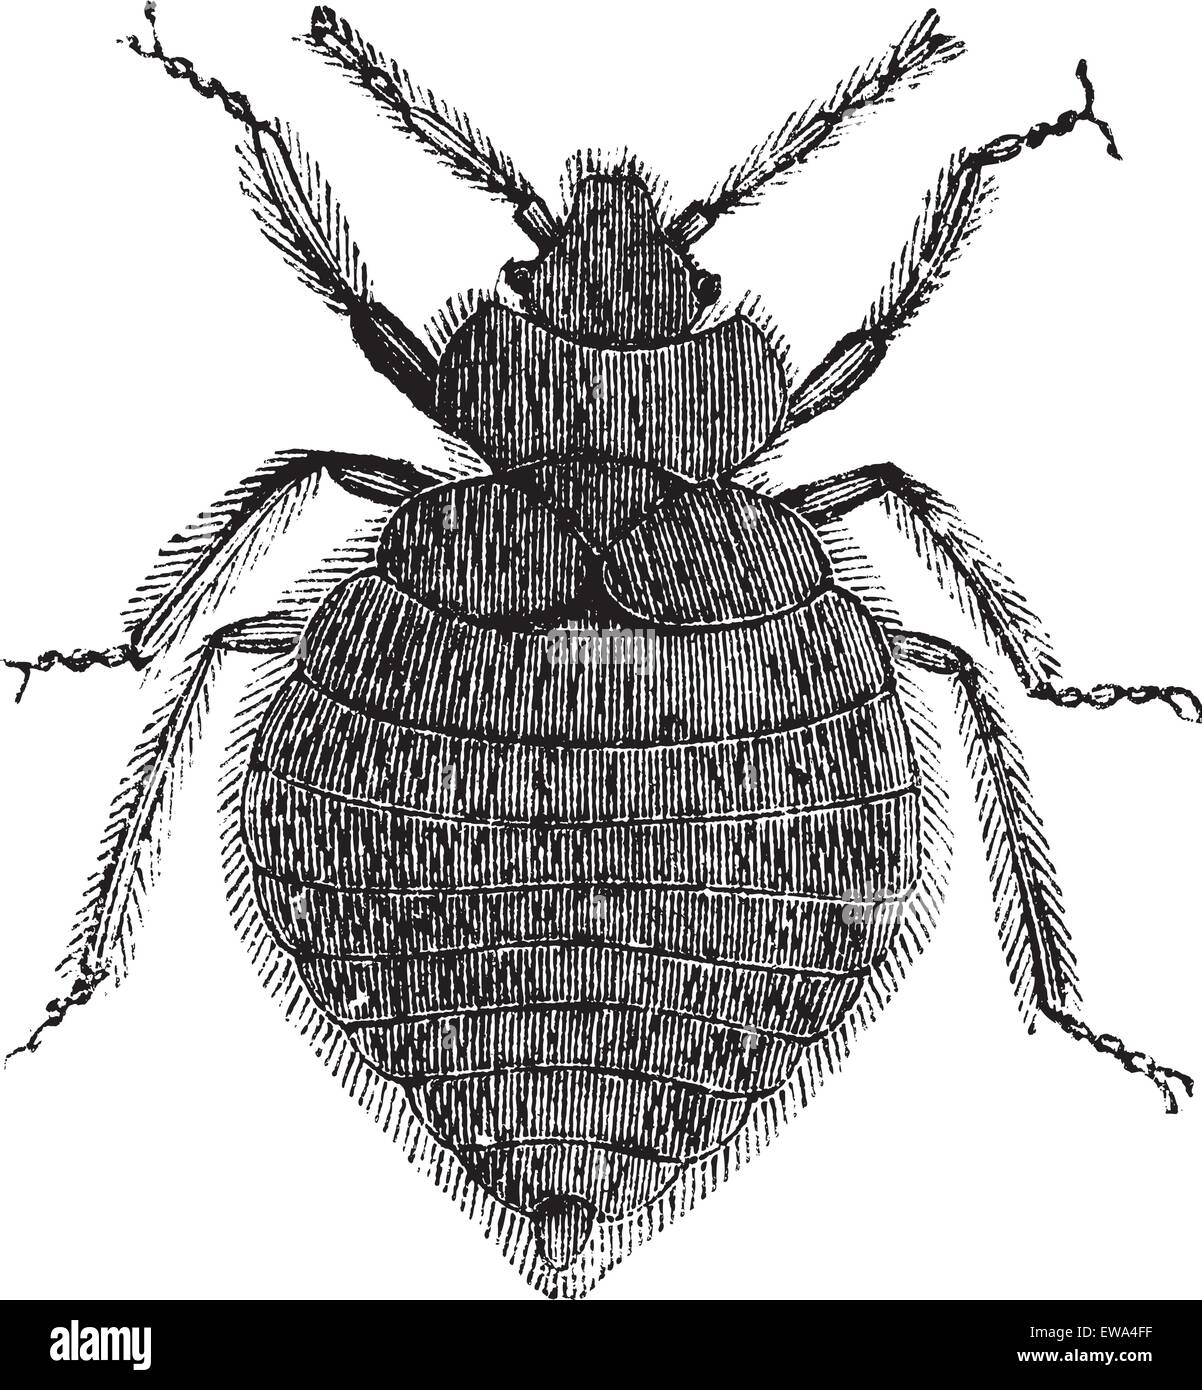 Cimici del letto (Lepinotus reticulatus) o Cimicidae, vintage illustrazioni incise. Bedbug isolato su bianco. Trousset enciclopedia (1886 Illustrazione Vettoriale